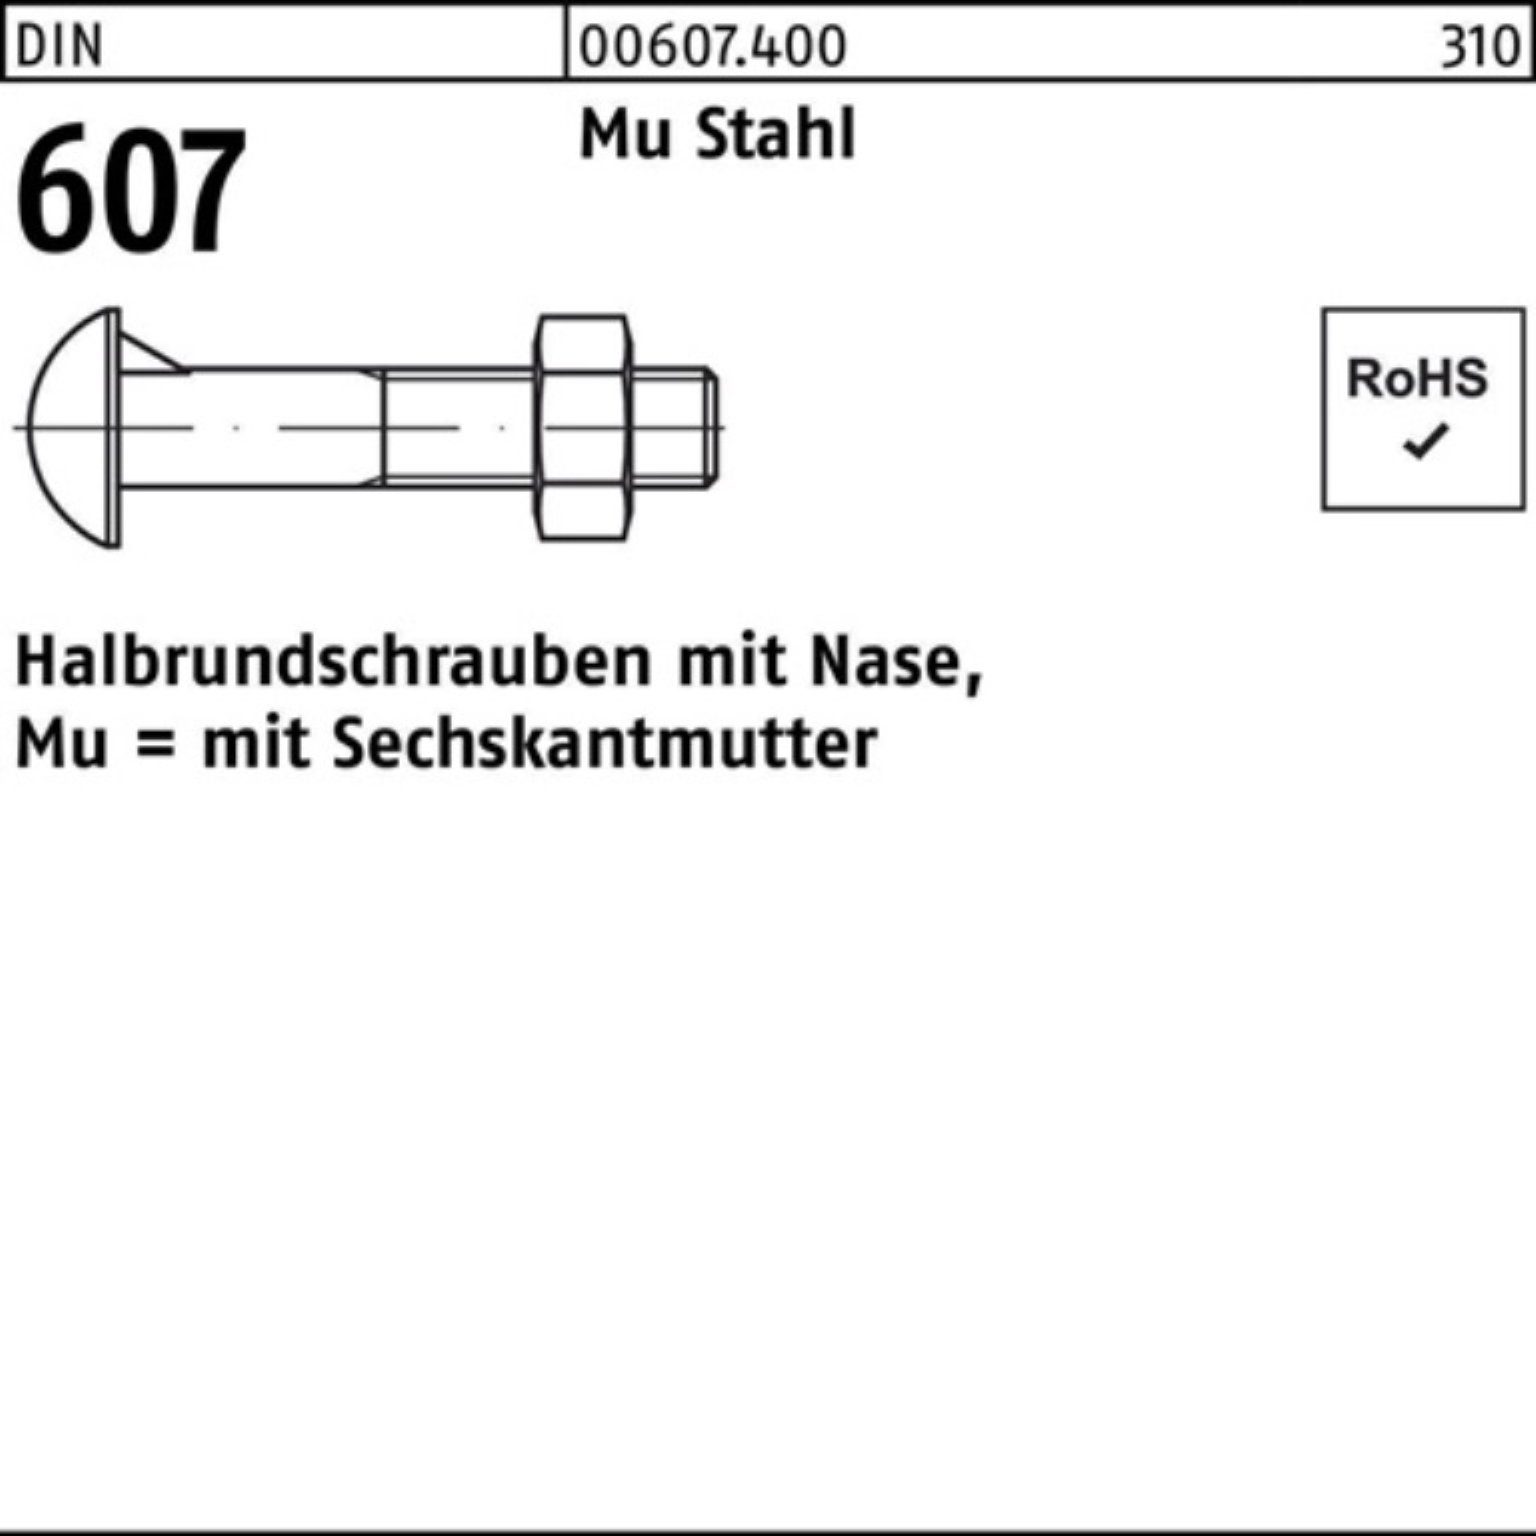 Reyher Schraube 100er Pack Halbrundschraube DIN 607 Nase/6-ktmutter M16x 35 Mu Stahl 4